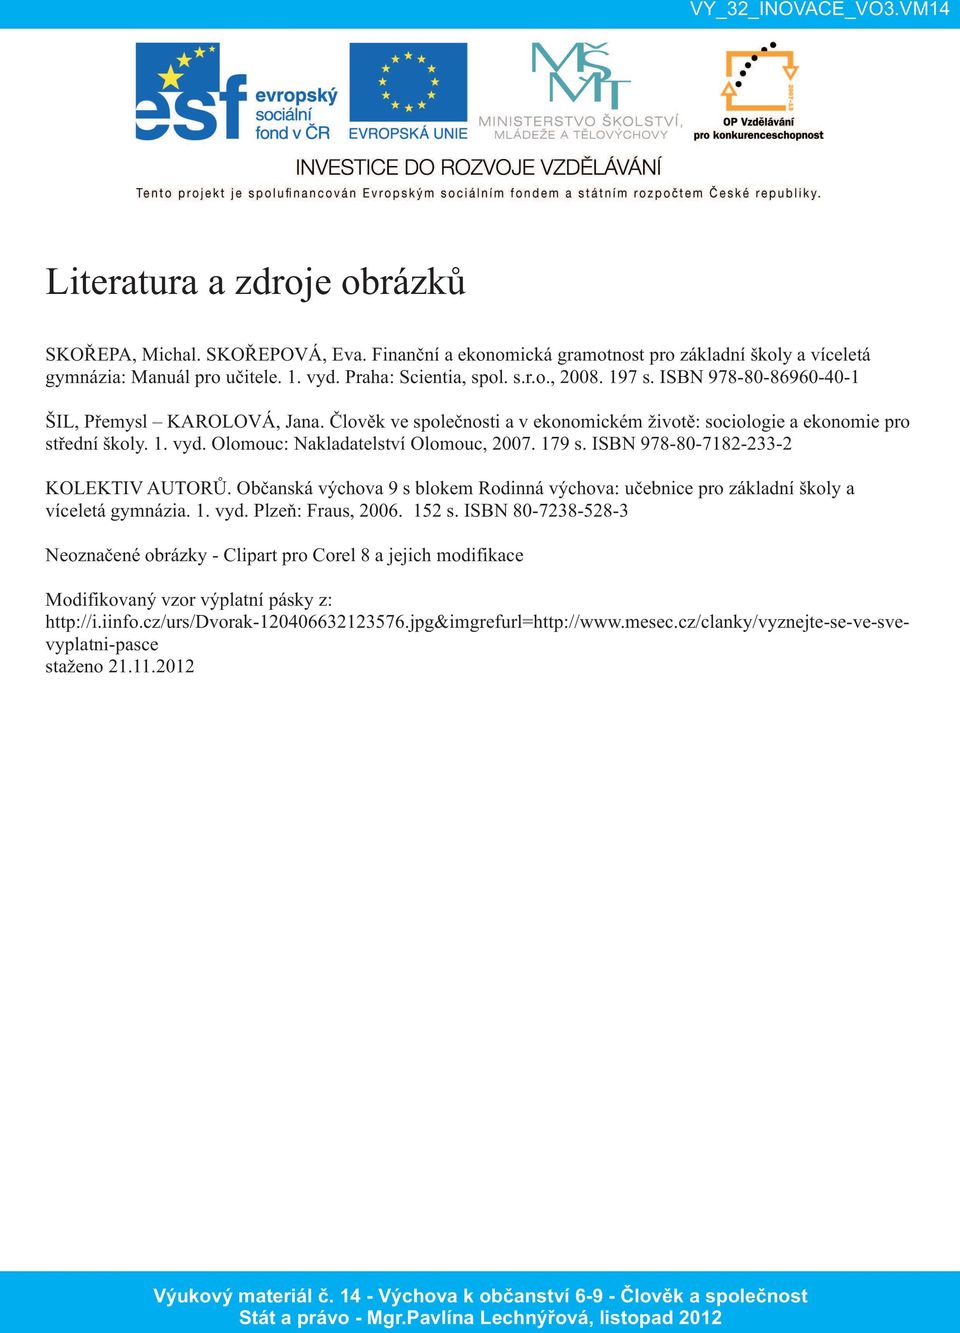 ISBN 978-80-7182-233-2 KOLEKTIV AUTORŮ. Občanská výchova 9 s blokem Rodinná výchova: učebnice pro základní školy a víceletá gymnázia. 1. vyd. Plzeň: Fraus, 2006. 152 s.